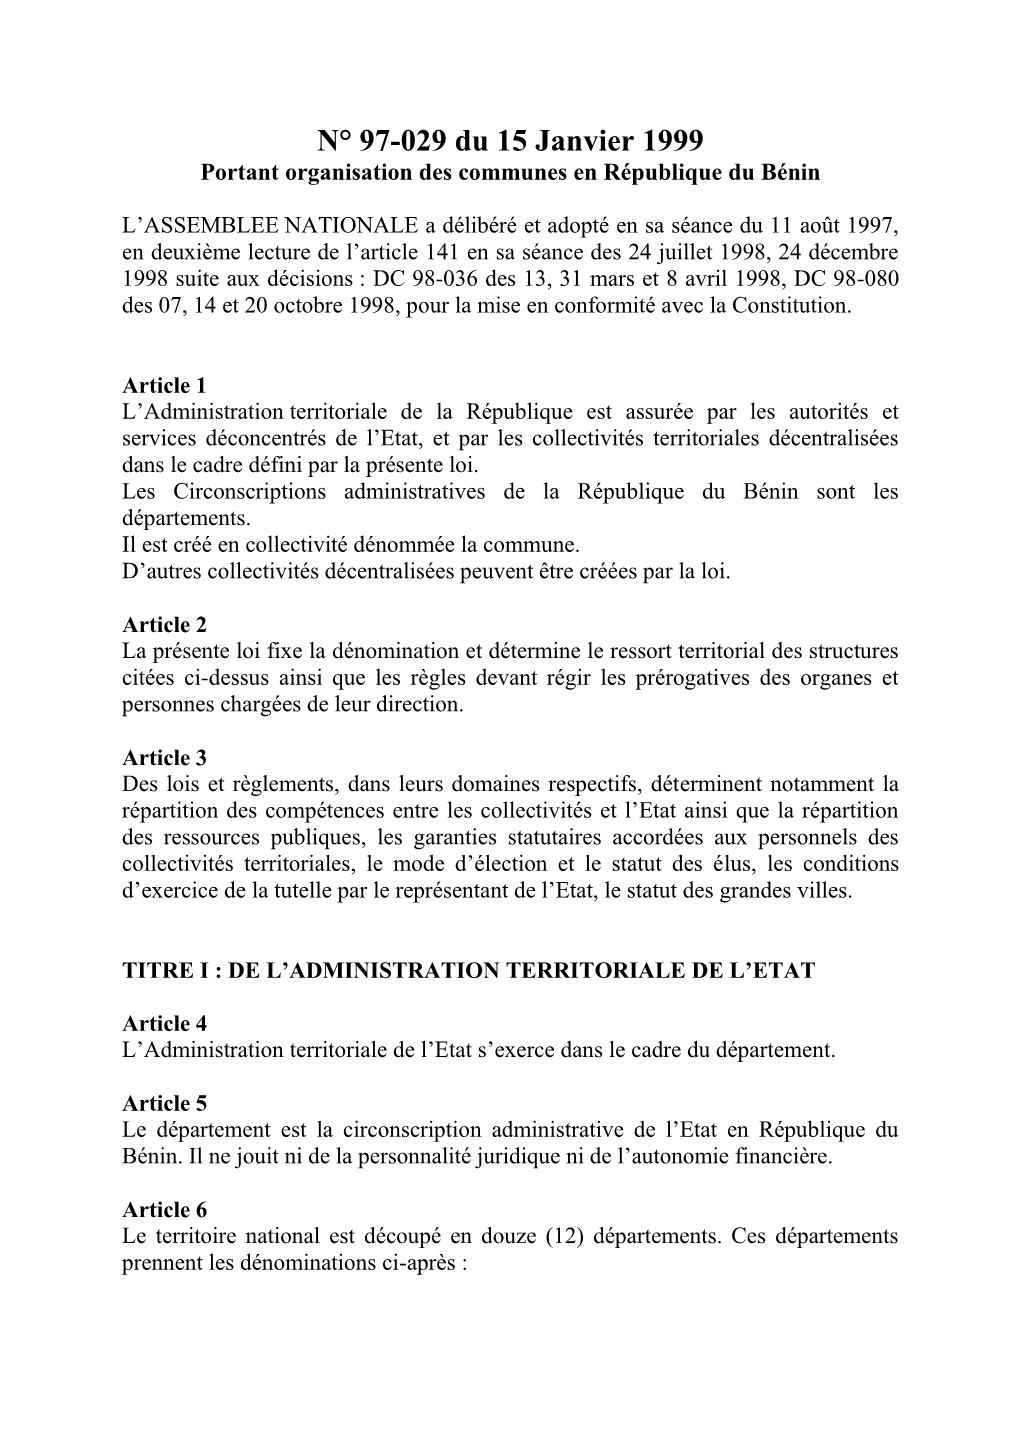 N° 97-029 Du 15 Janvier 1999 Portant Organisation Des Communes En République Du Bénin